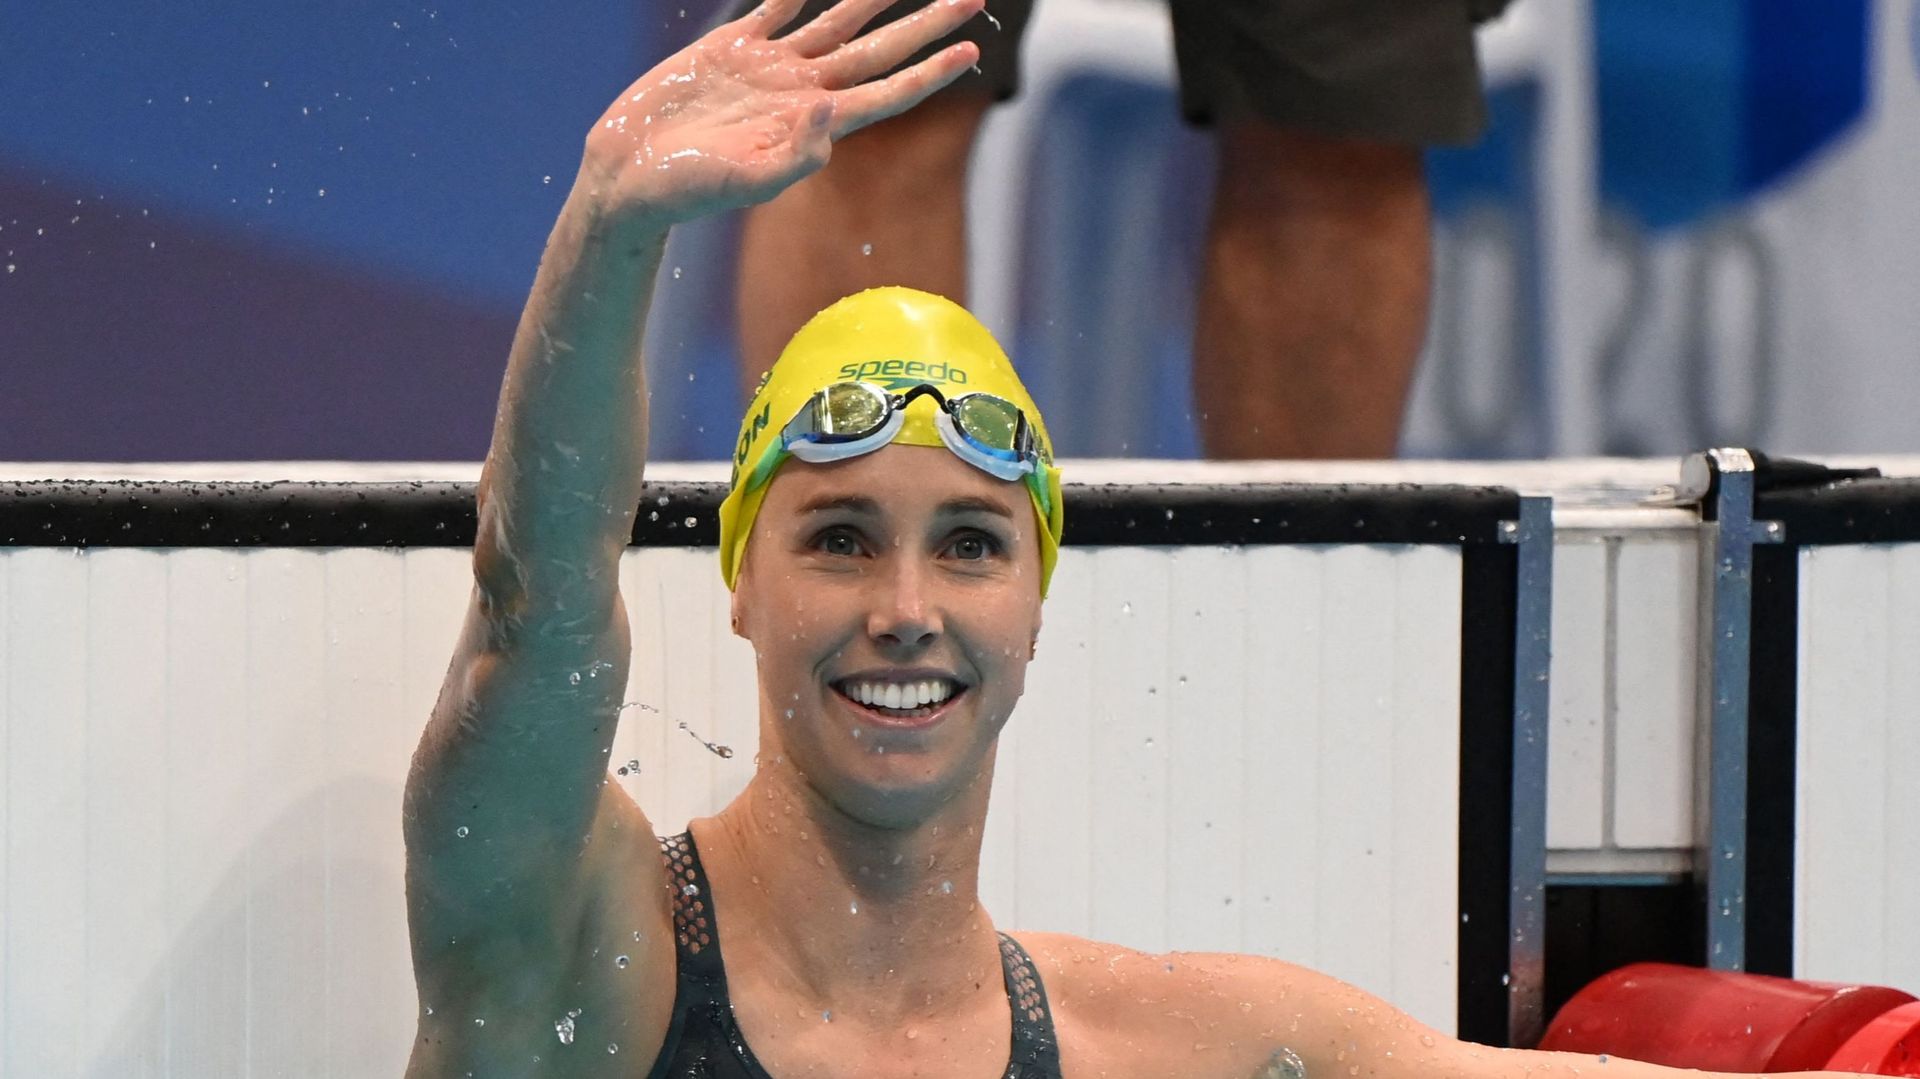 L’Australienne Emma McKeon, déjà championne olympique du 100 m nage libre et du relais 4x100 m, a décroché dimanche sa troisième médaille d’or des JO de Tokyo en remportant le 50 m nage libre.